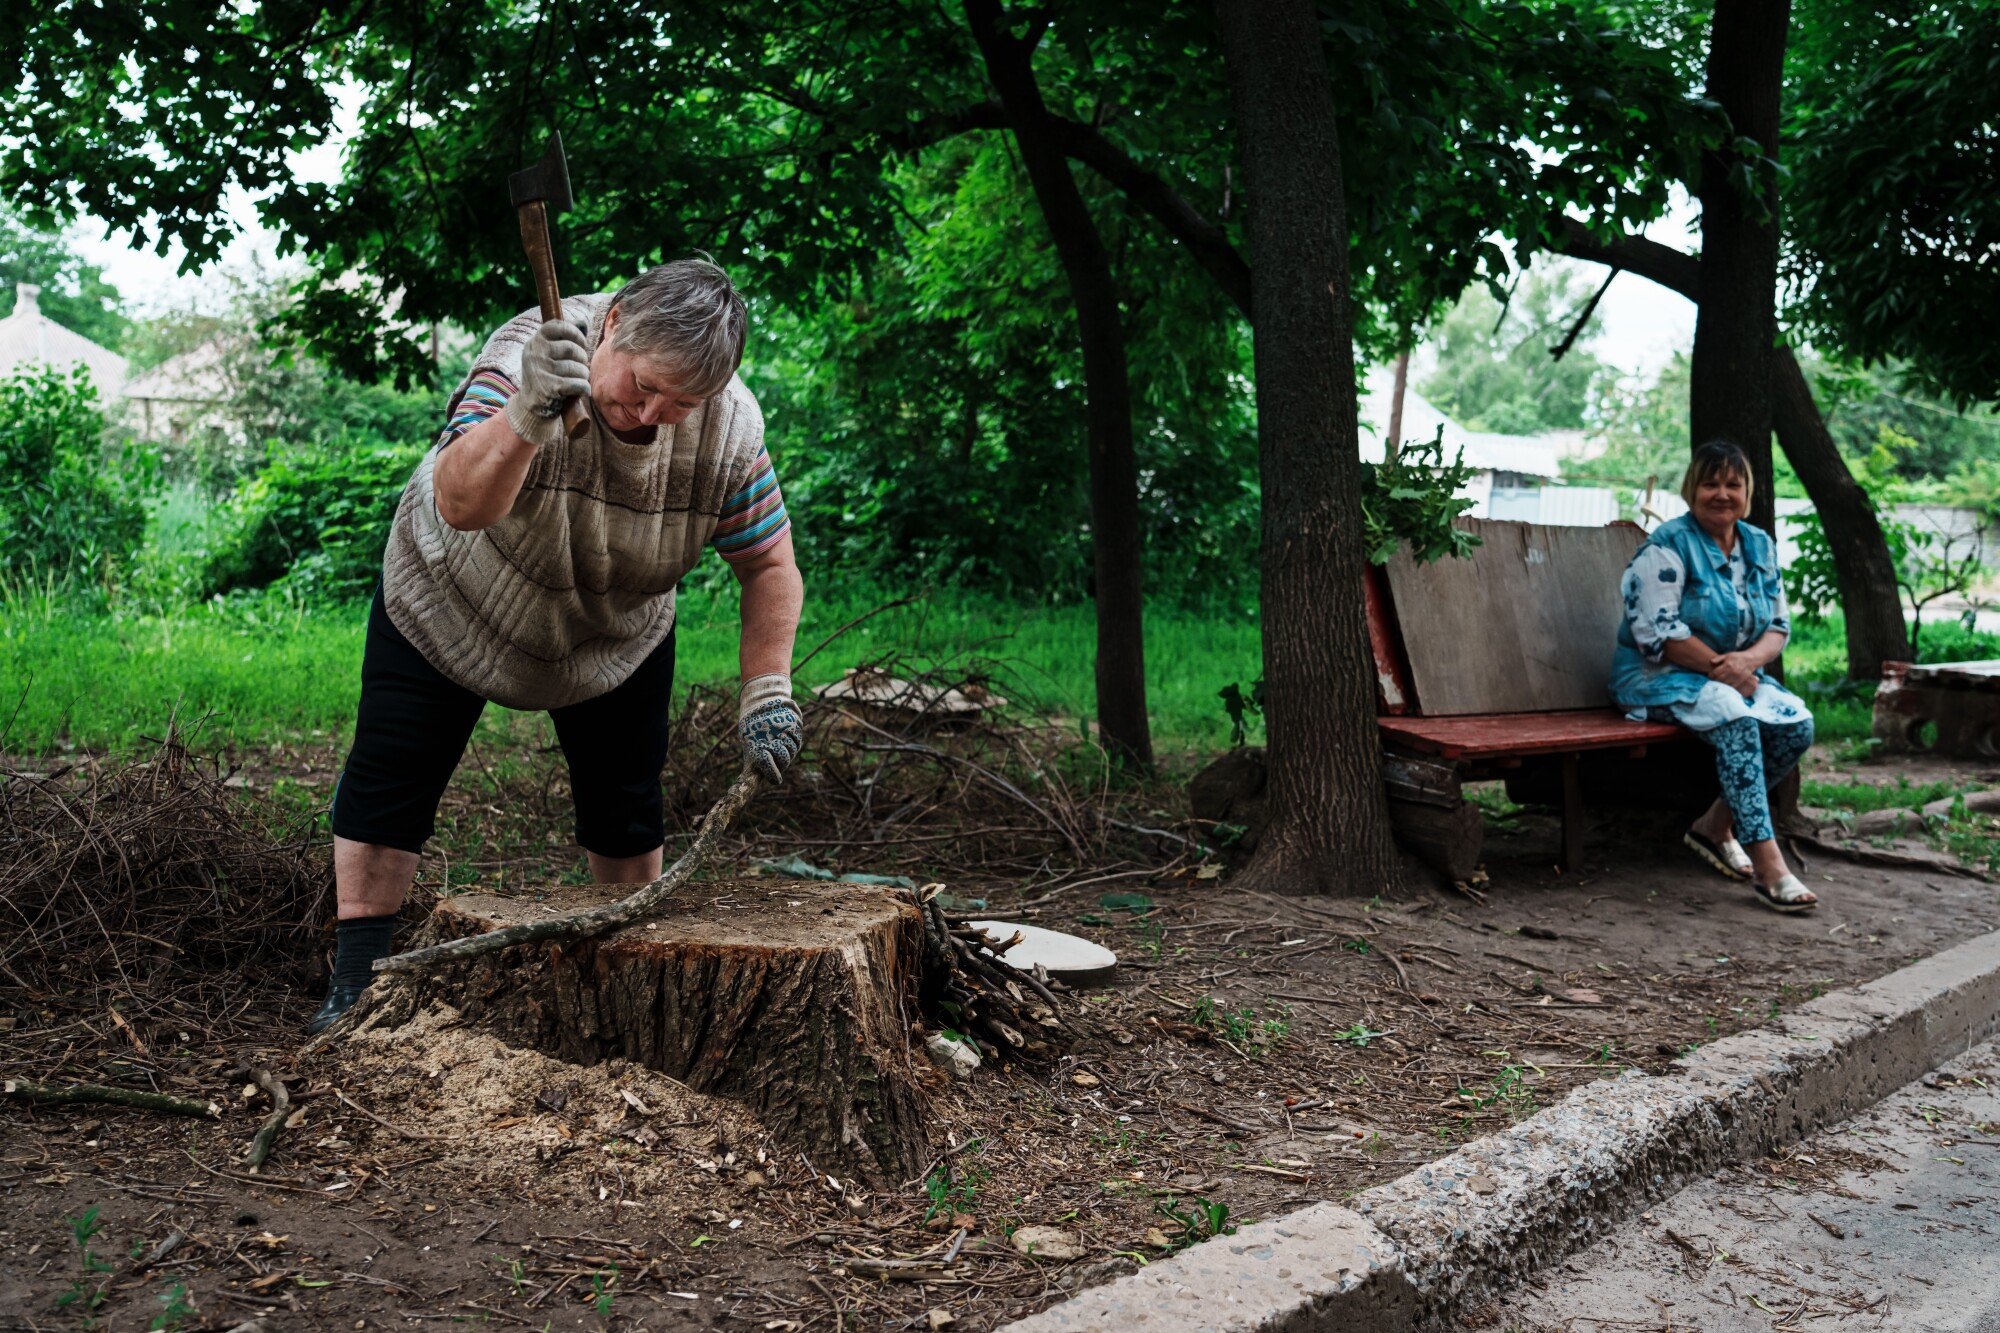 Liubov Vedeneeva, Ukrayna'nın Lysychansk kentinde yakacak odun kesiyor. "Eğlenirken zaman hızlı uçar," omuz silkiyor.